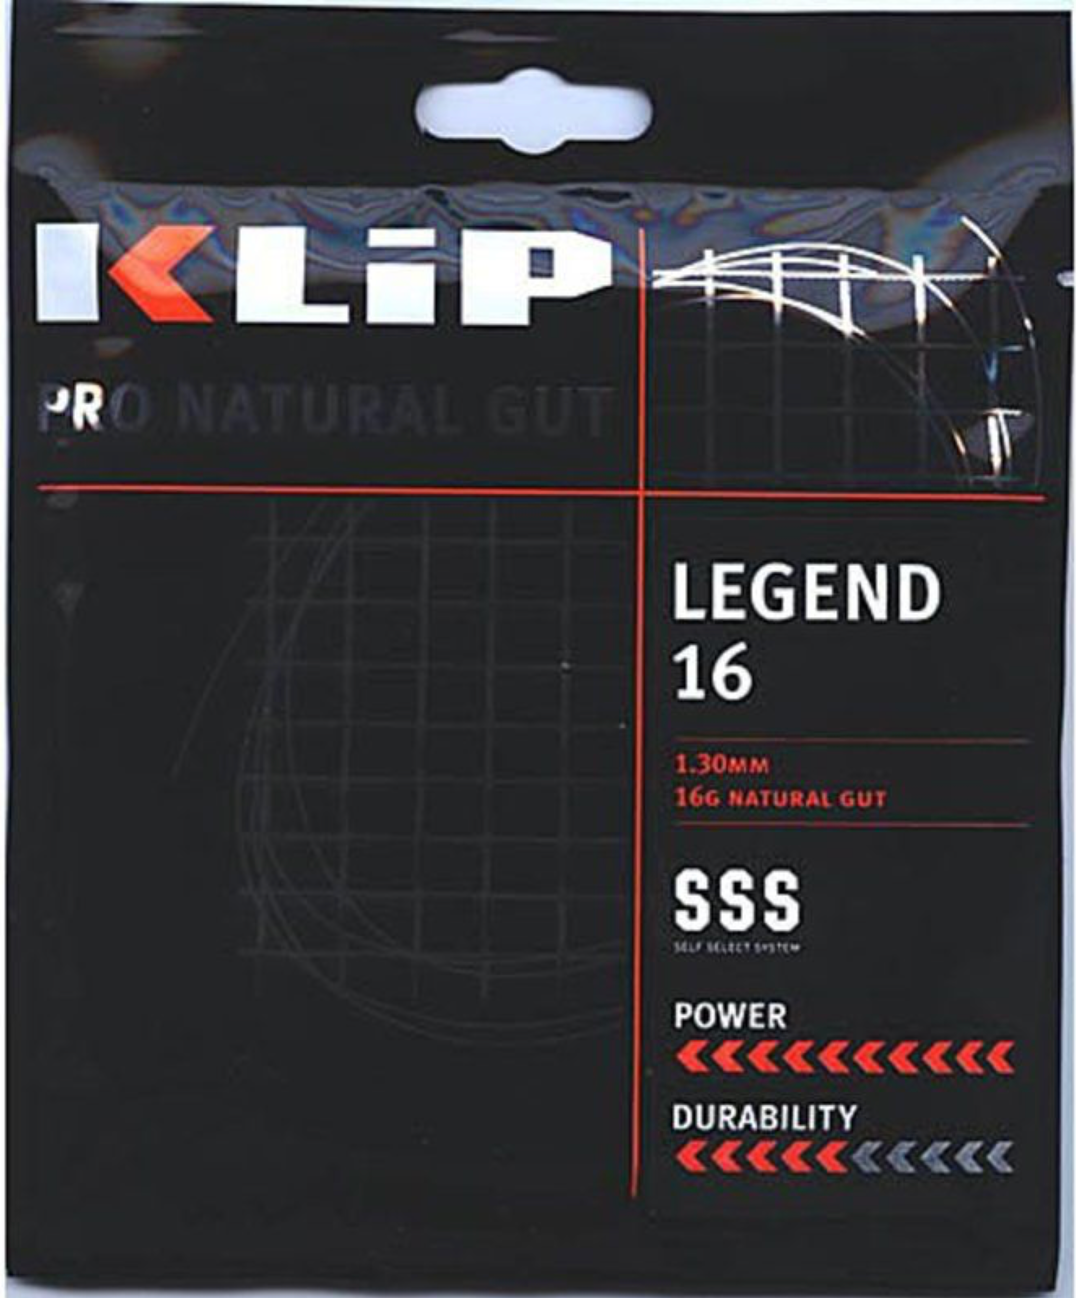 Klip Legend Natural Gut 16G Natural